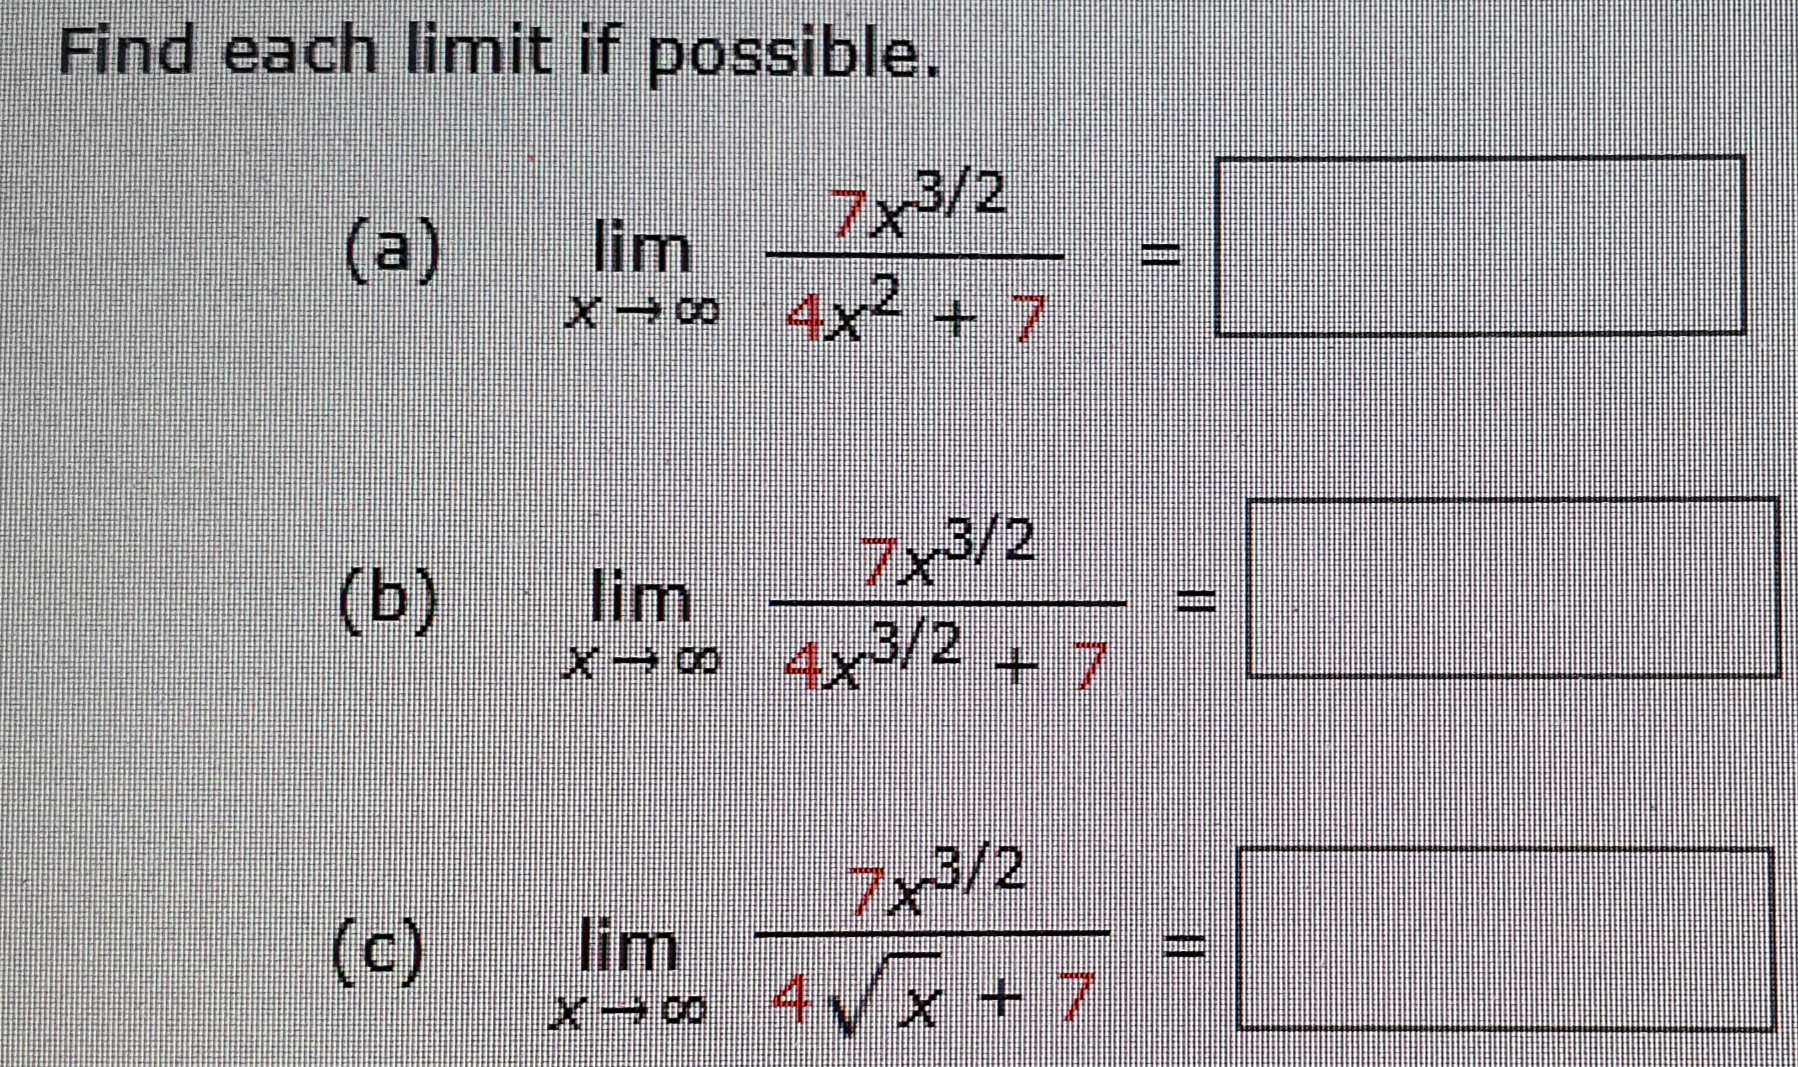 Find each limit if possible.
7x3/2
(a)
lim
4x2 + 7
7x3/2
(b)
lim
x 9 4x 2 +7
/2
(c)
lim
Xoo 4 yx + 7
